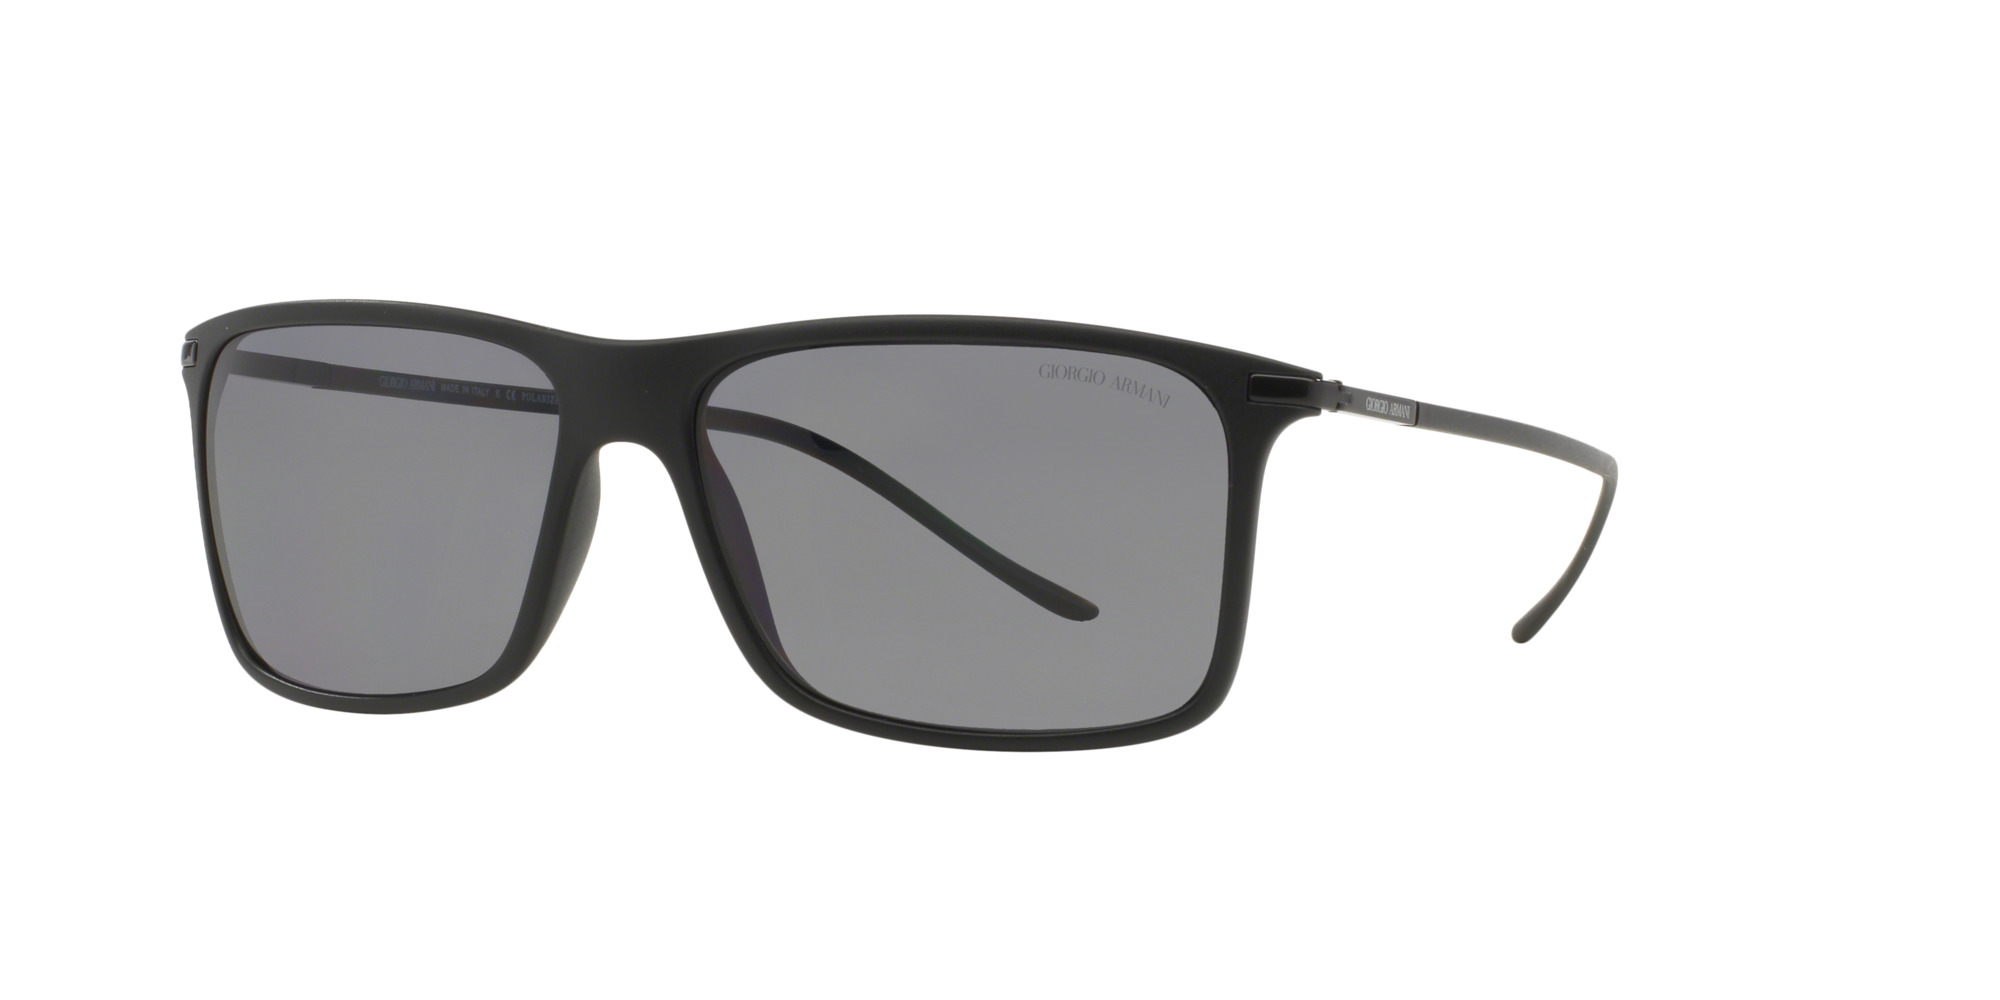 armani sunglasses logo